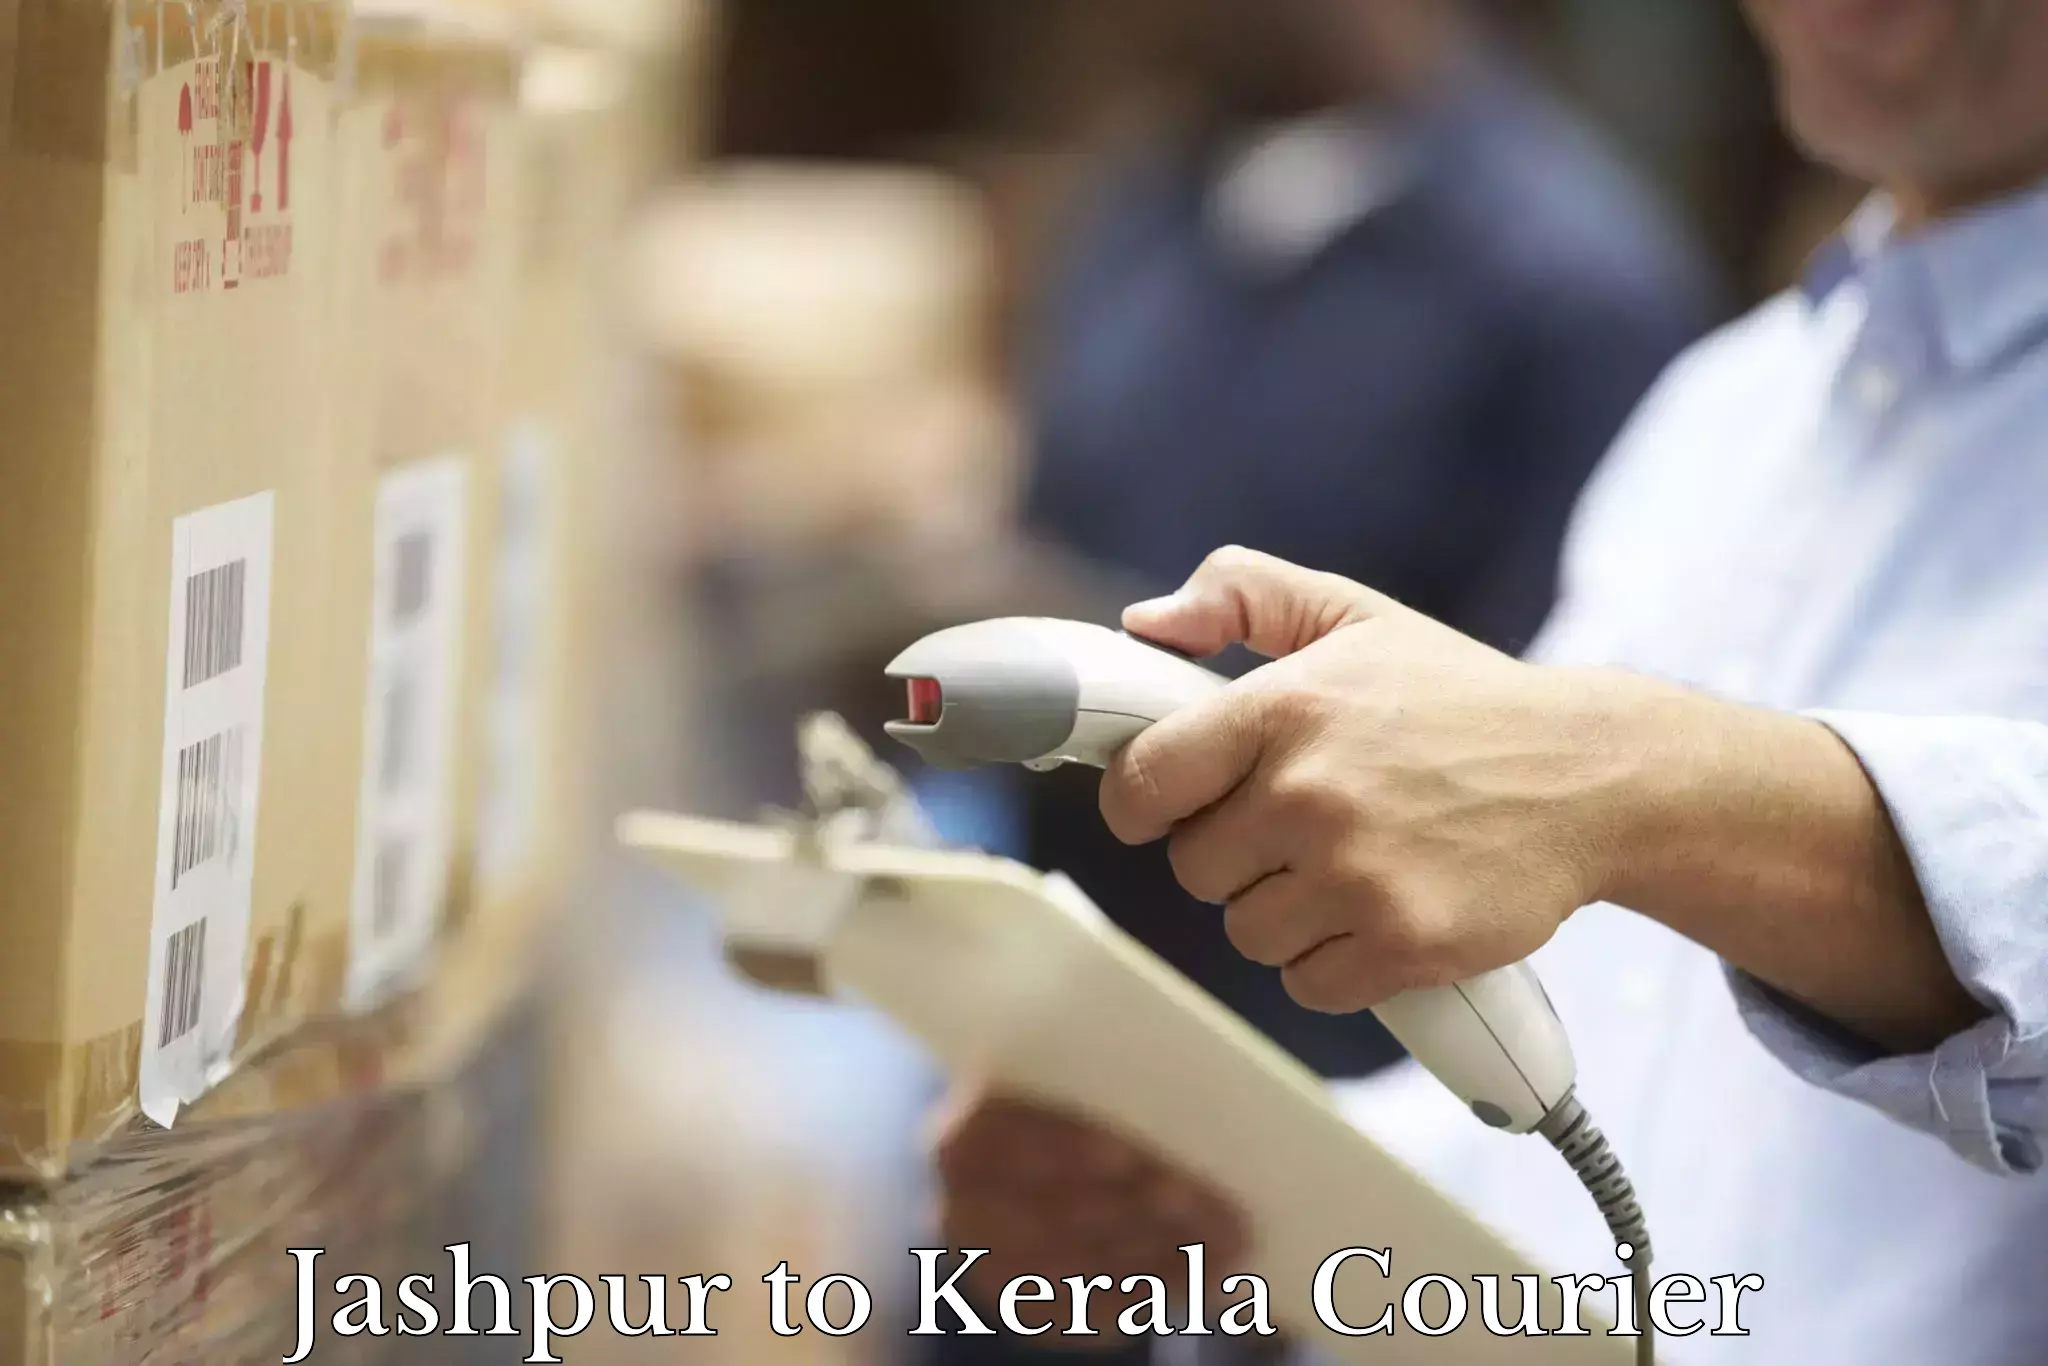 Courier service comparison Jashpur to Koyilandy